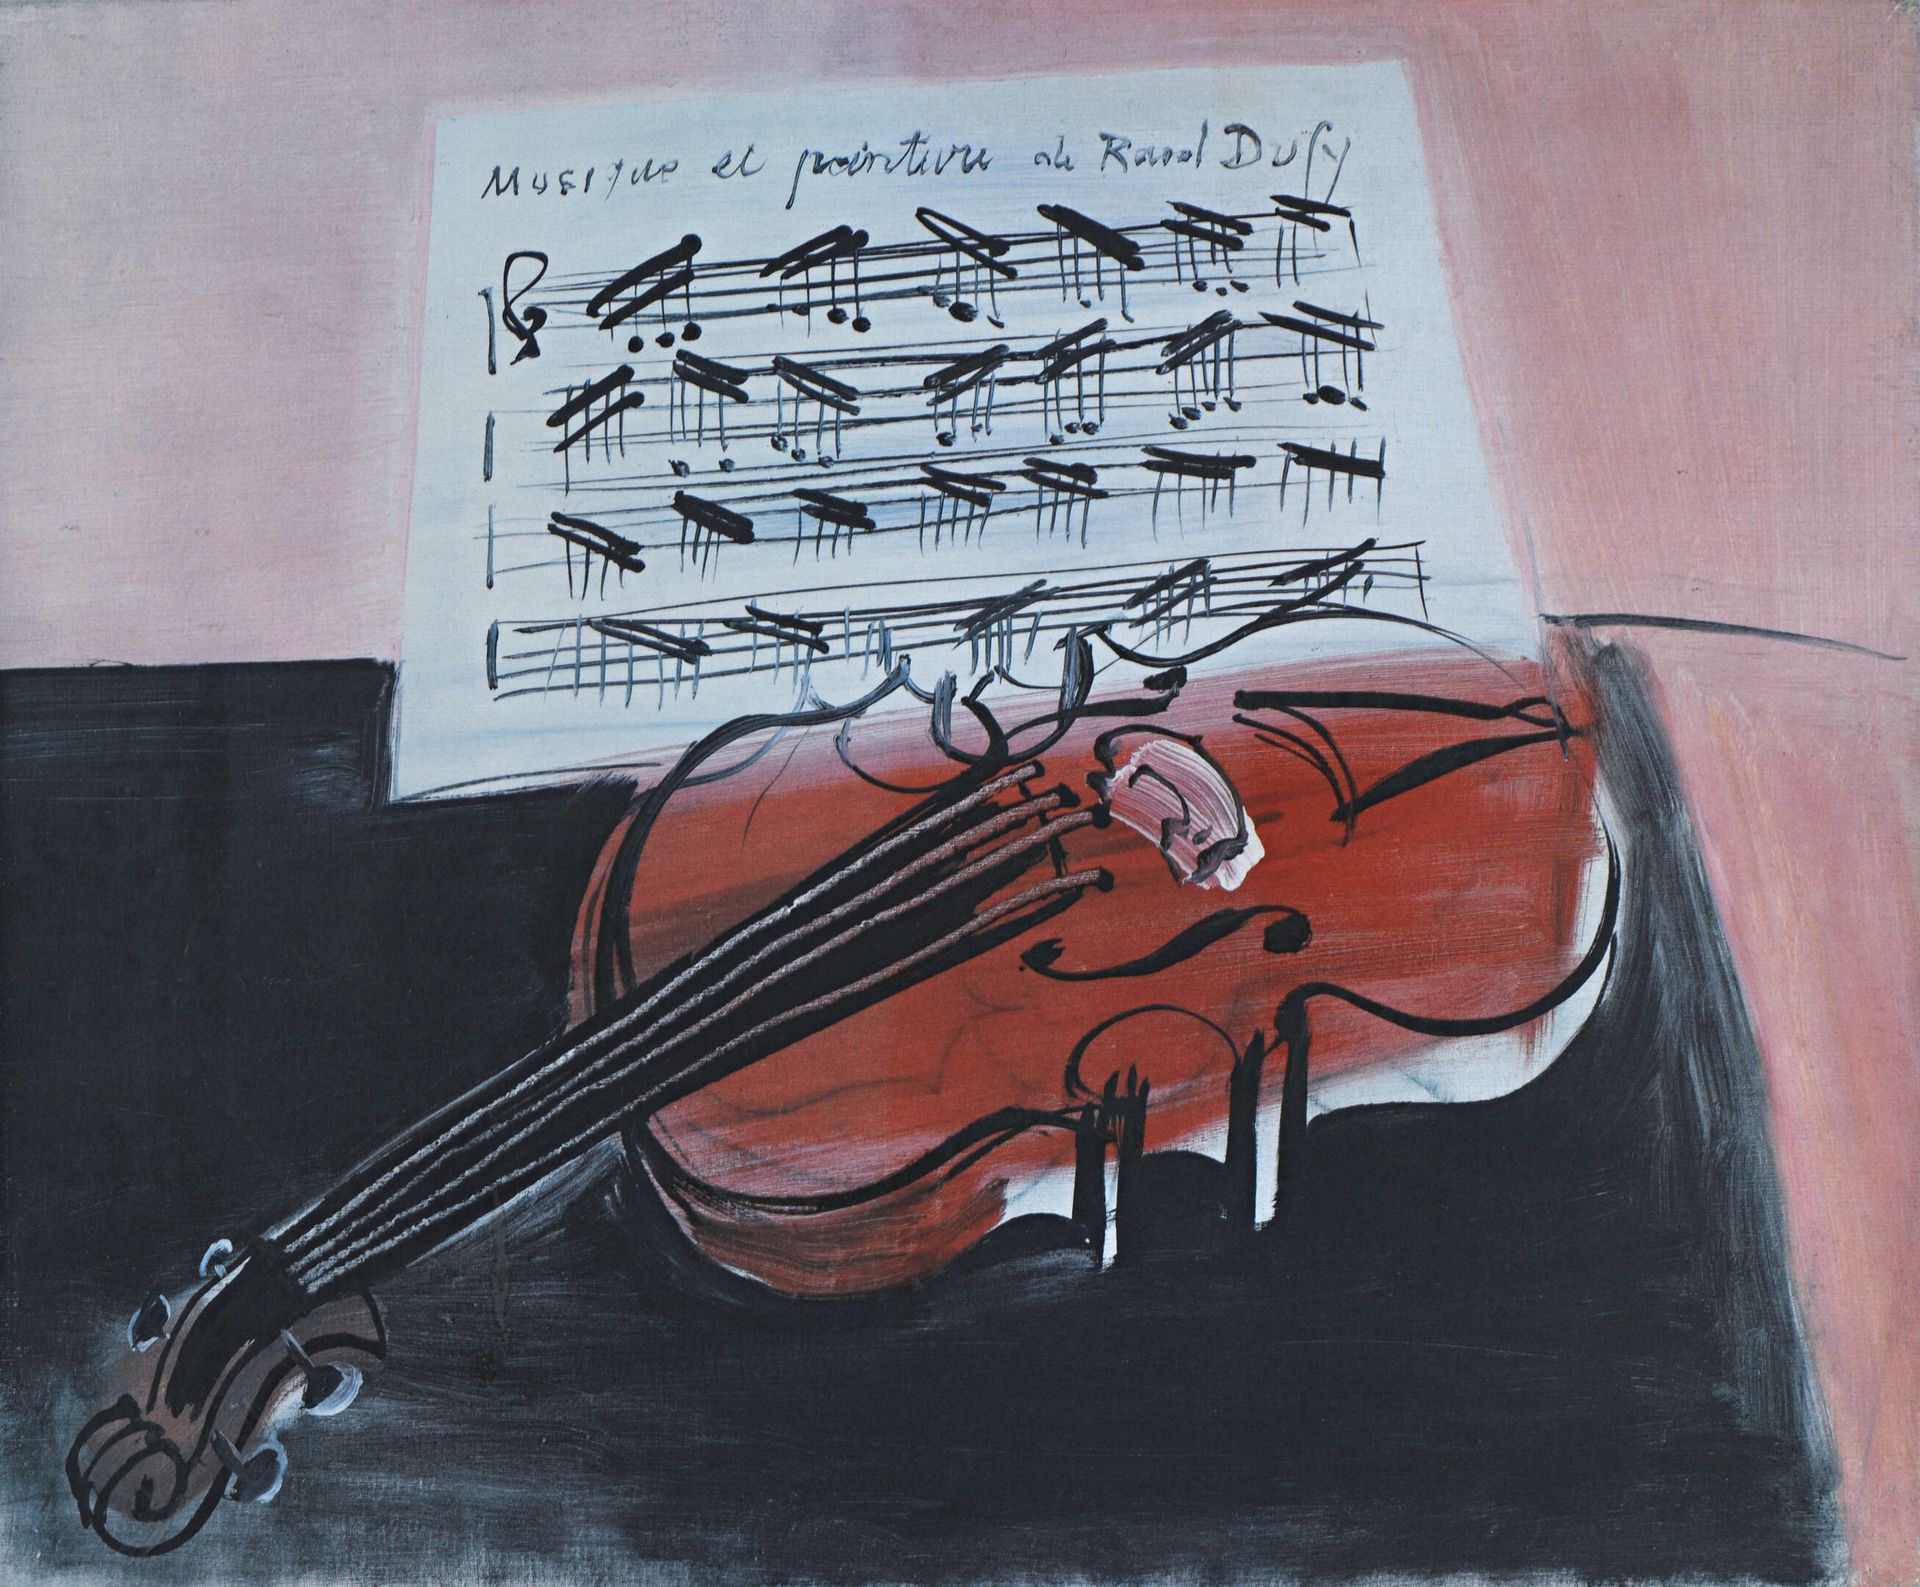 Null Dopo RAOUL DUFY
"Musica e pittura".
Offset su carta.
49 x 69 cm.